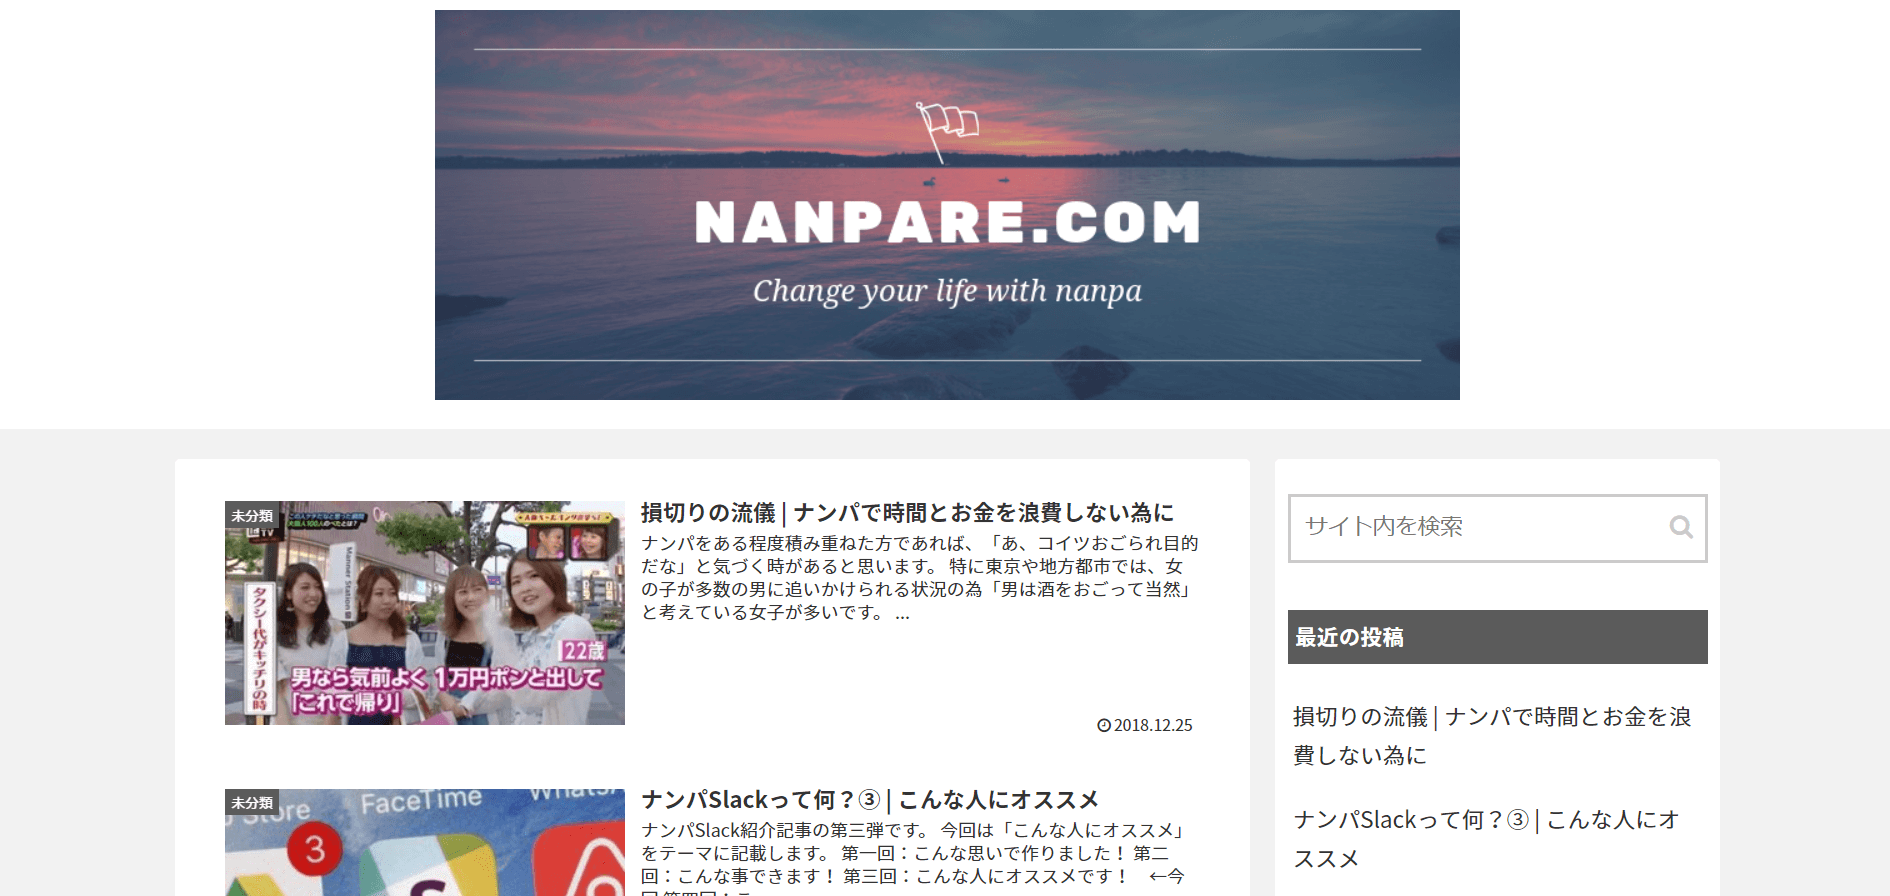 NANPARE.COM